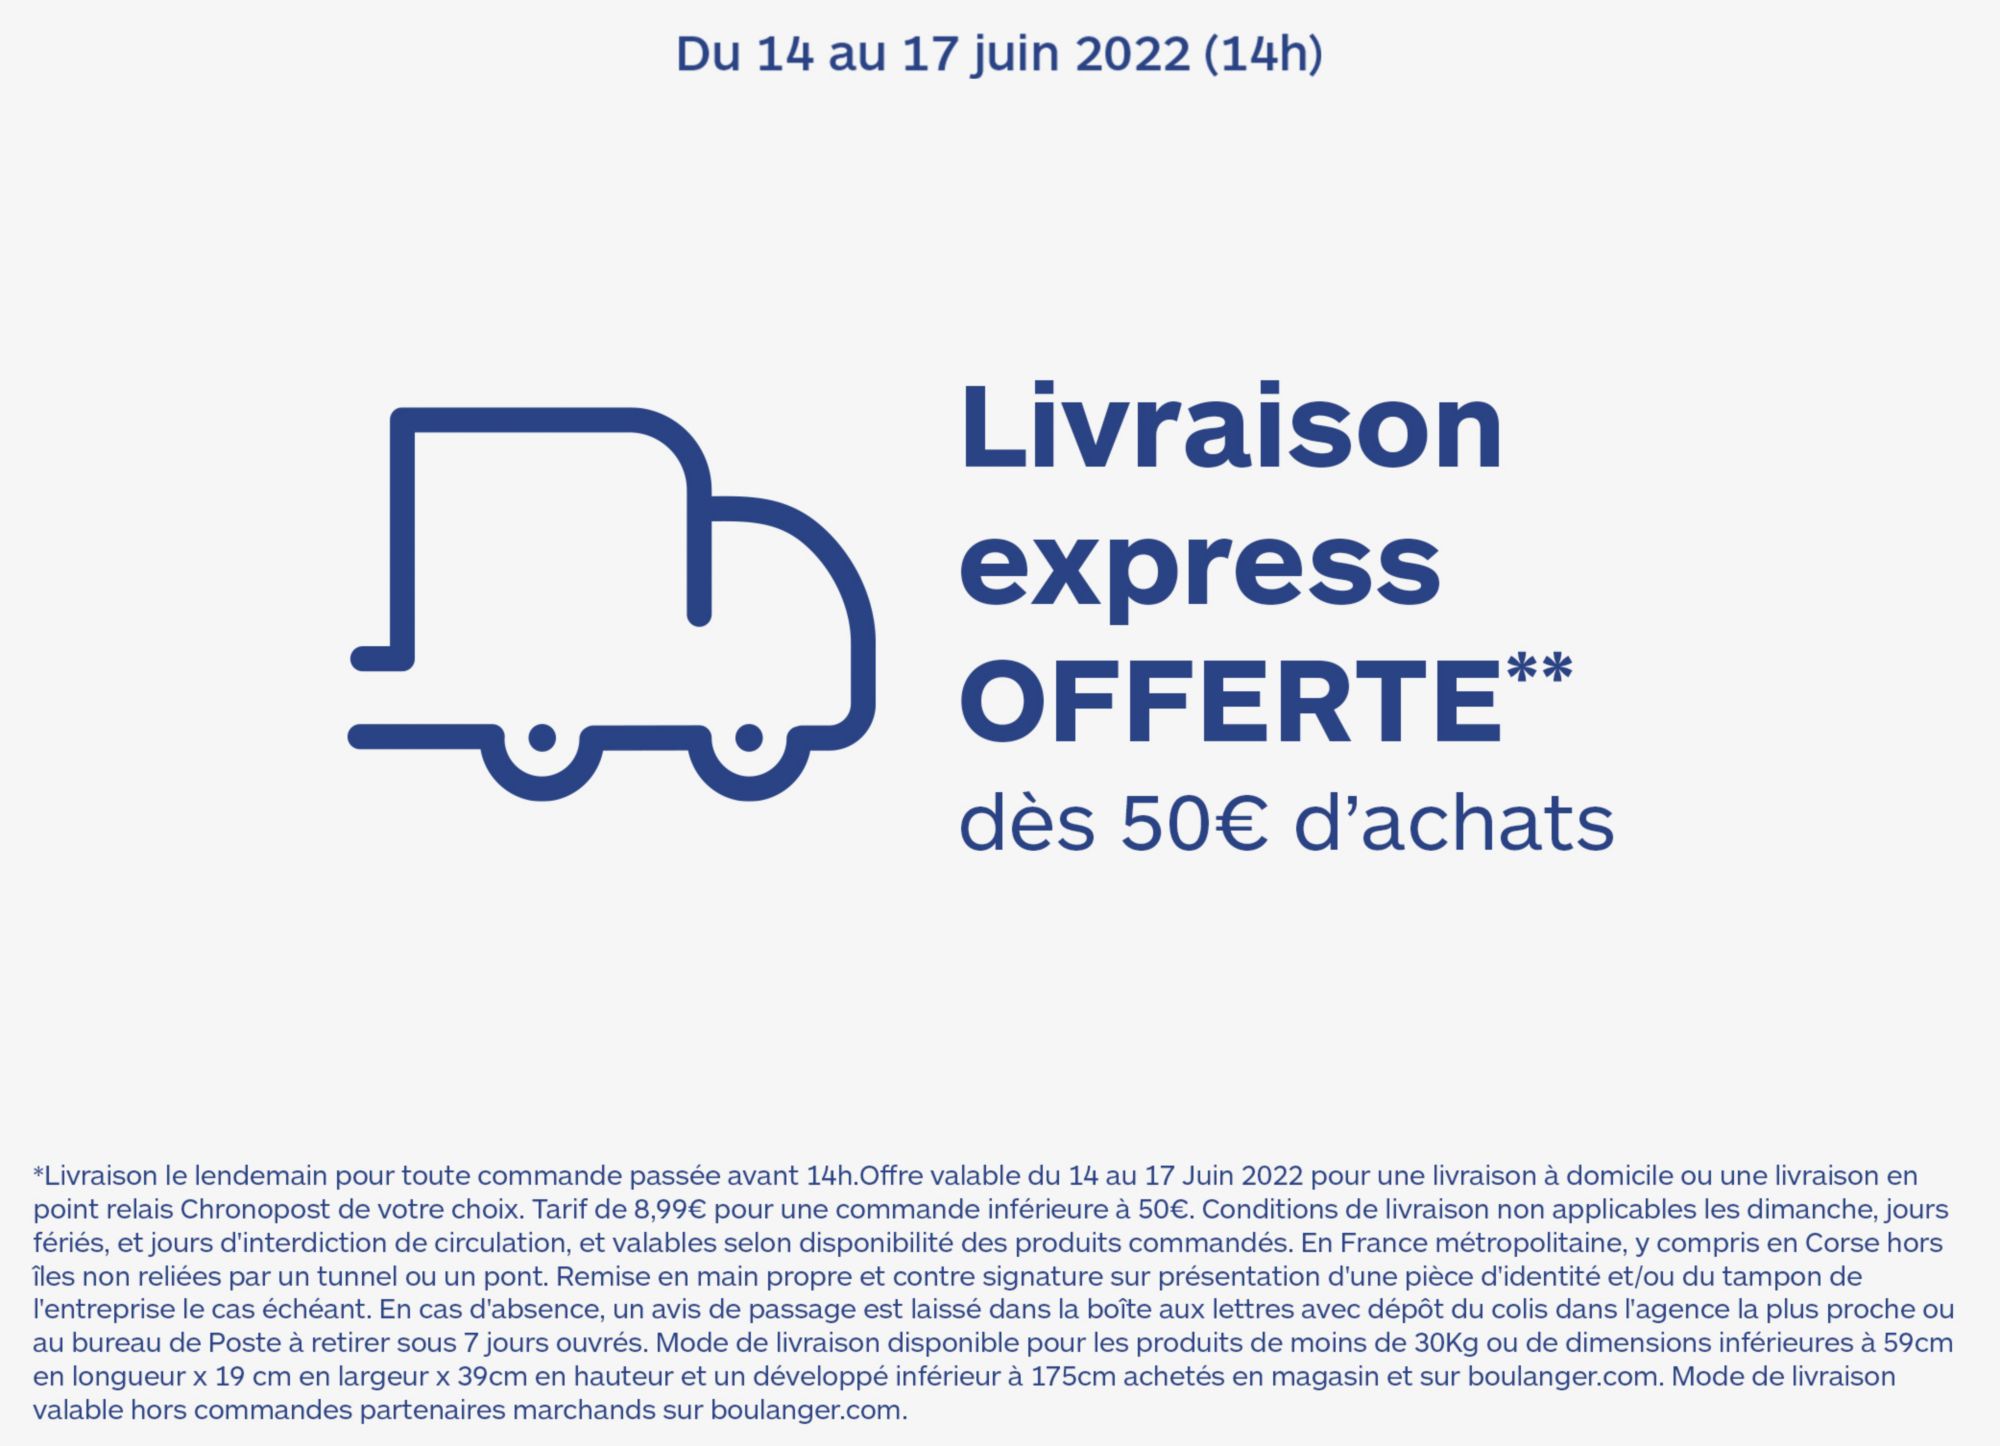 Livraison express offerte dès 50€ d'achats